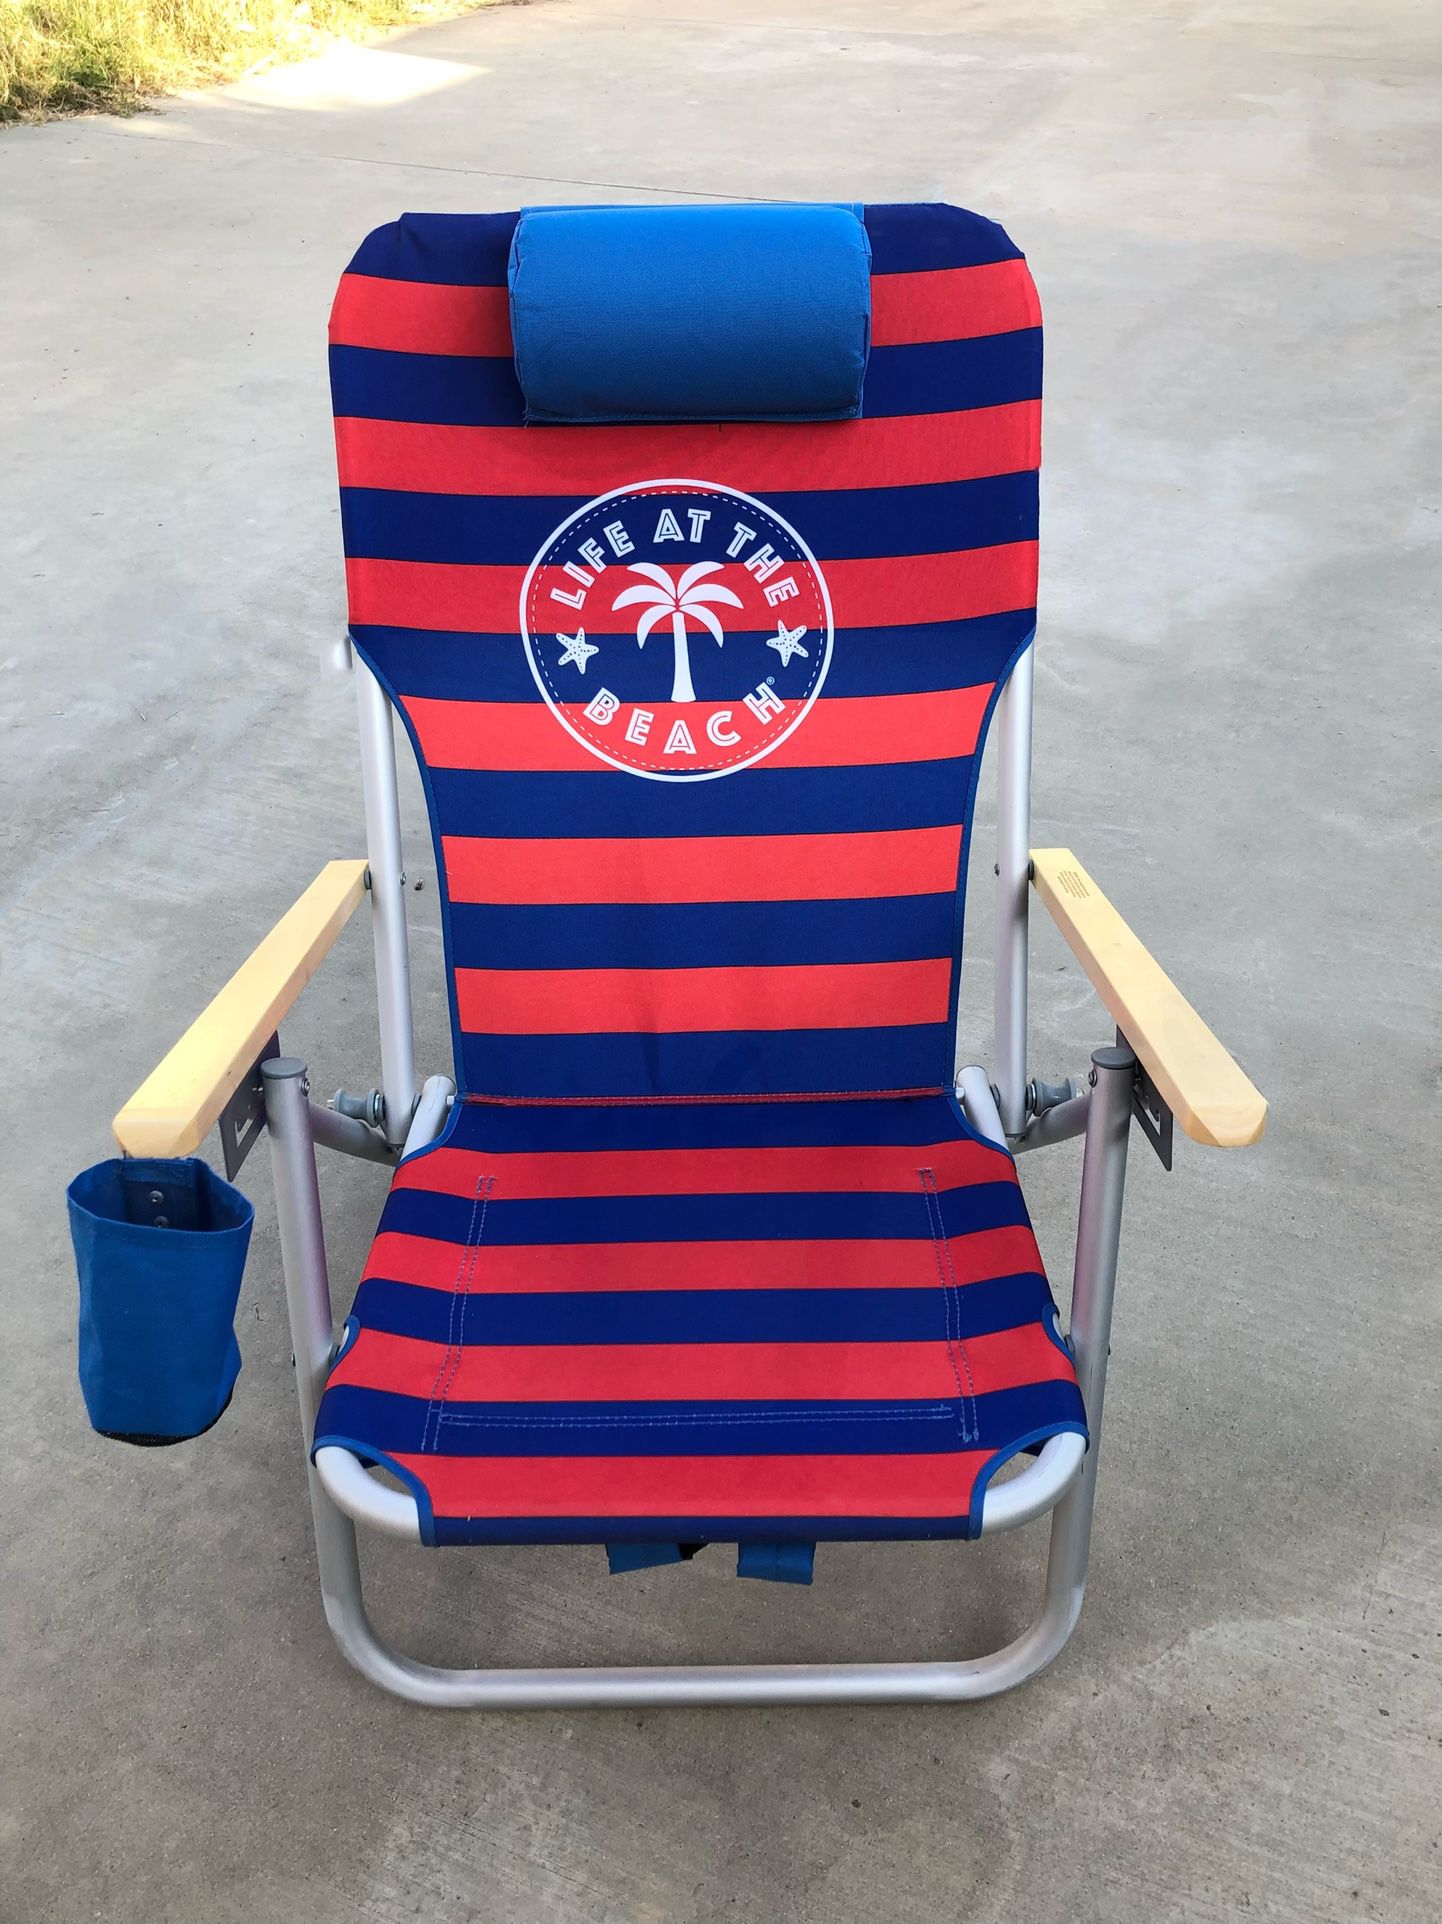 Folding beach chair